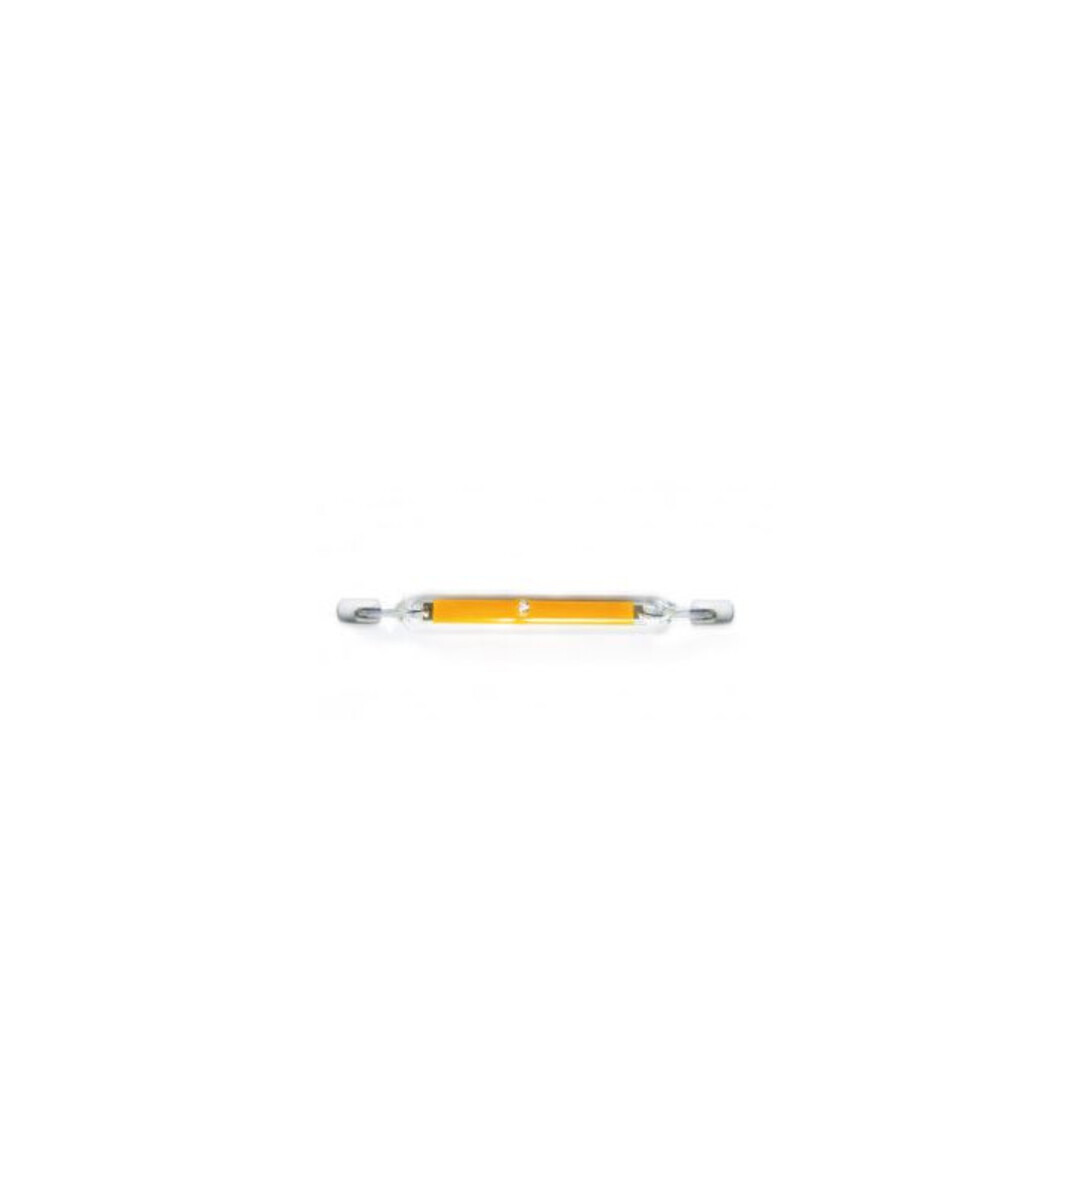 Ampoule crayon led 8w - 2700k - culot r7s